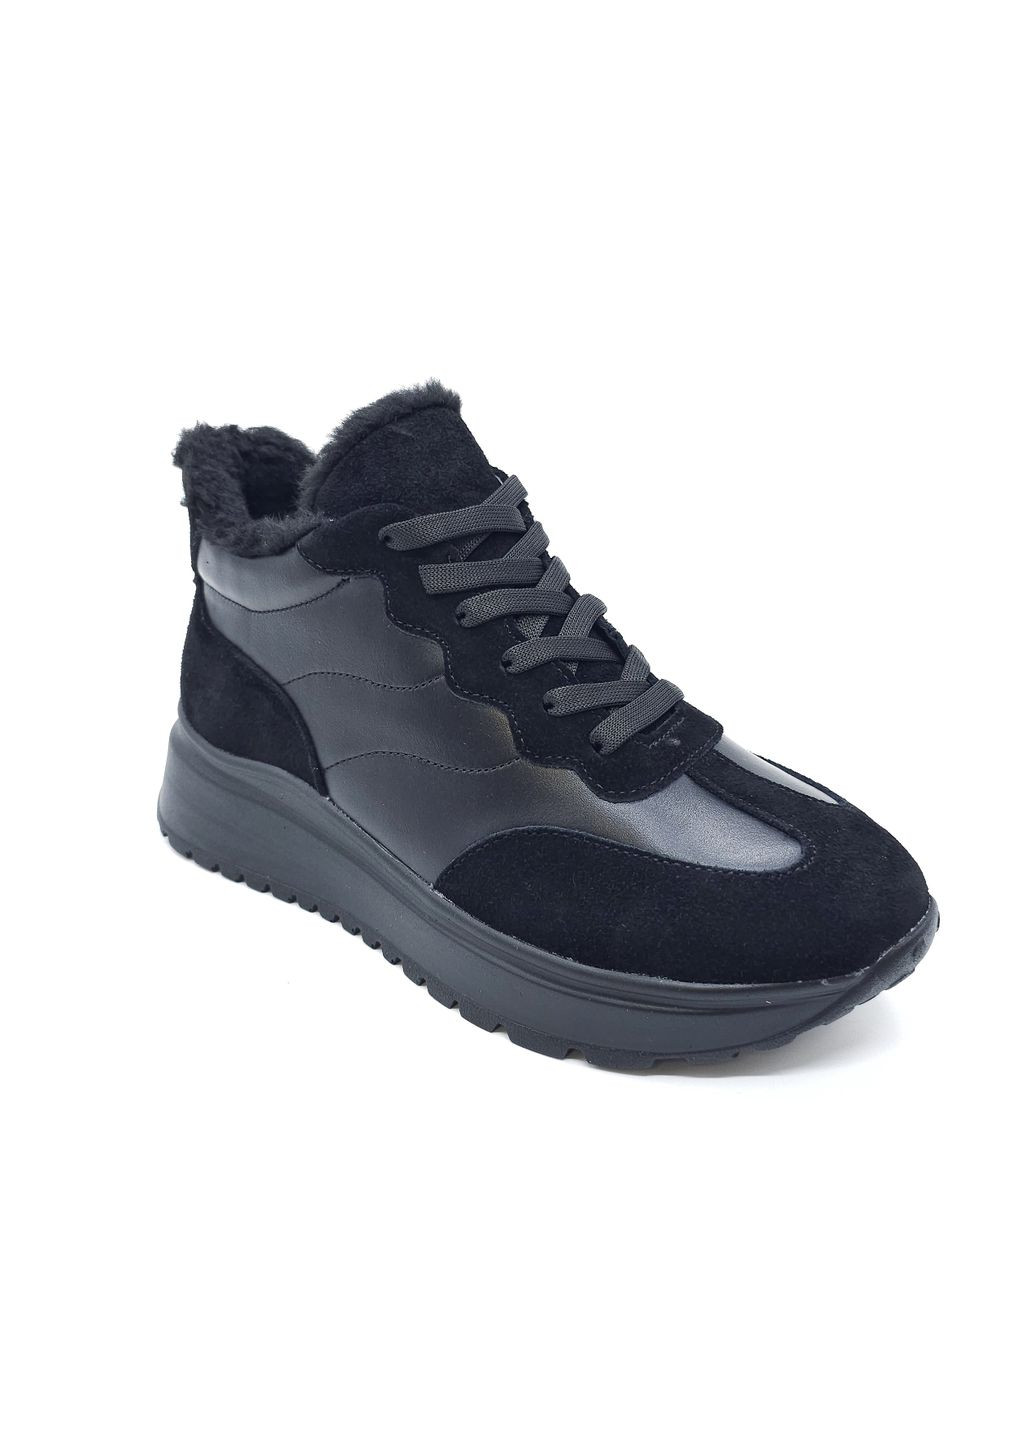 Чорні всесезонні жіночі кросівки зимові чорні шкіряні mr-14-2 24,5 см (р) Morento